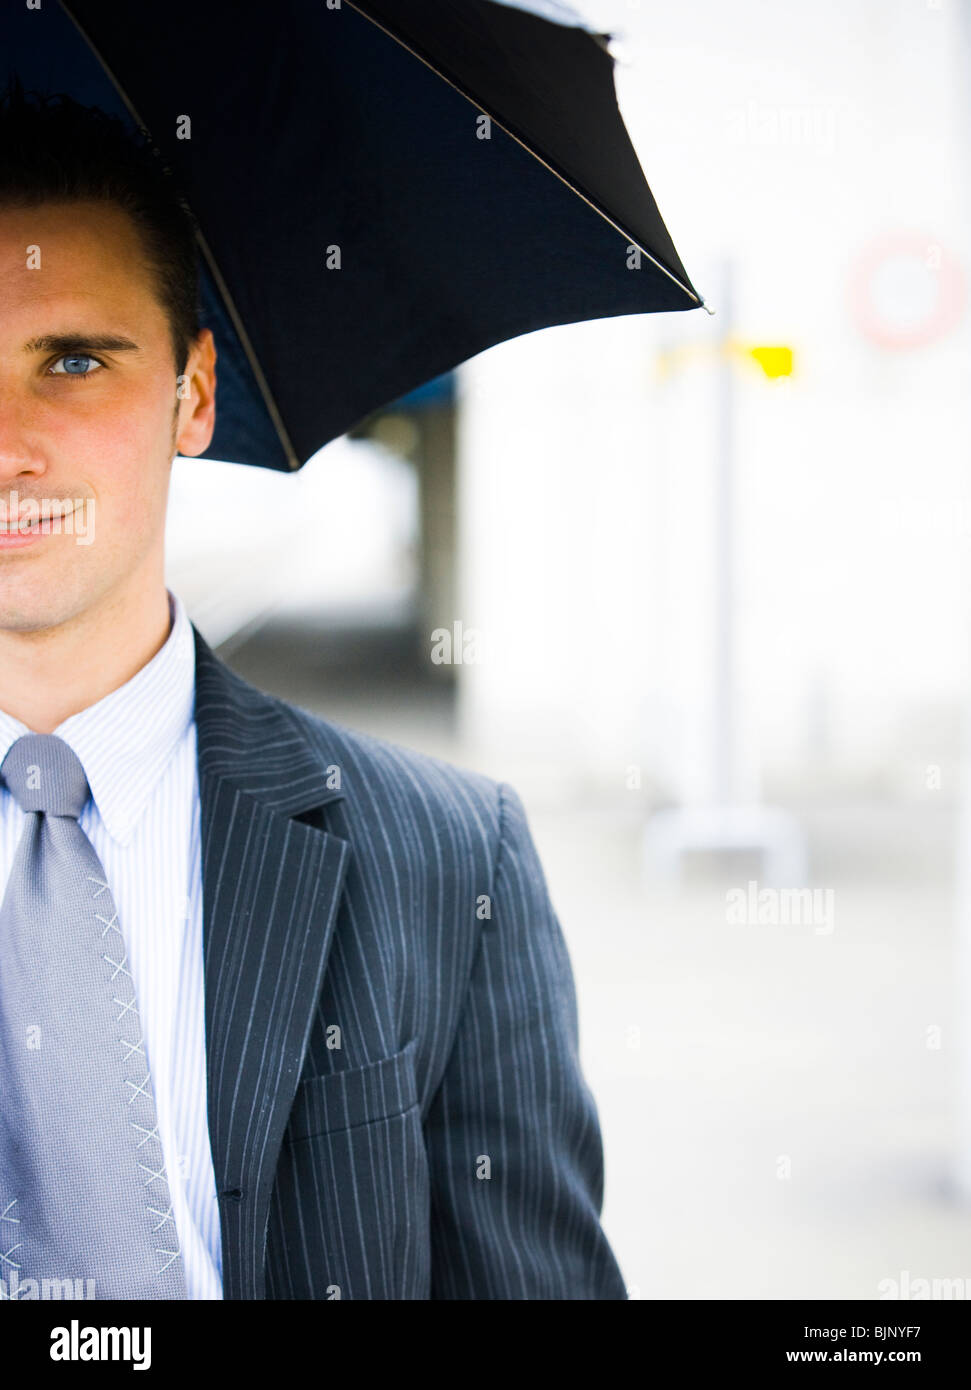 Closeup of man with umbrella Stock Photo